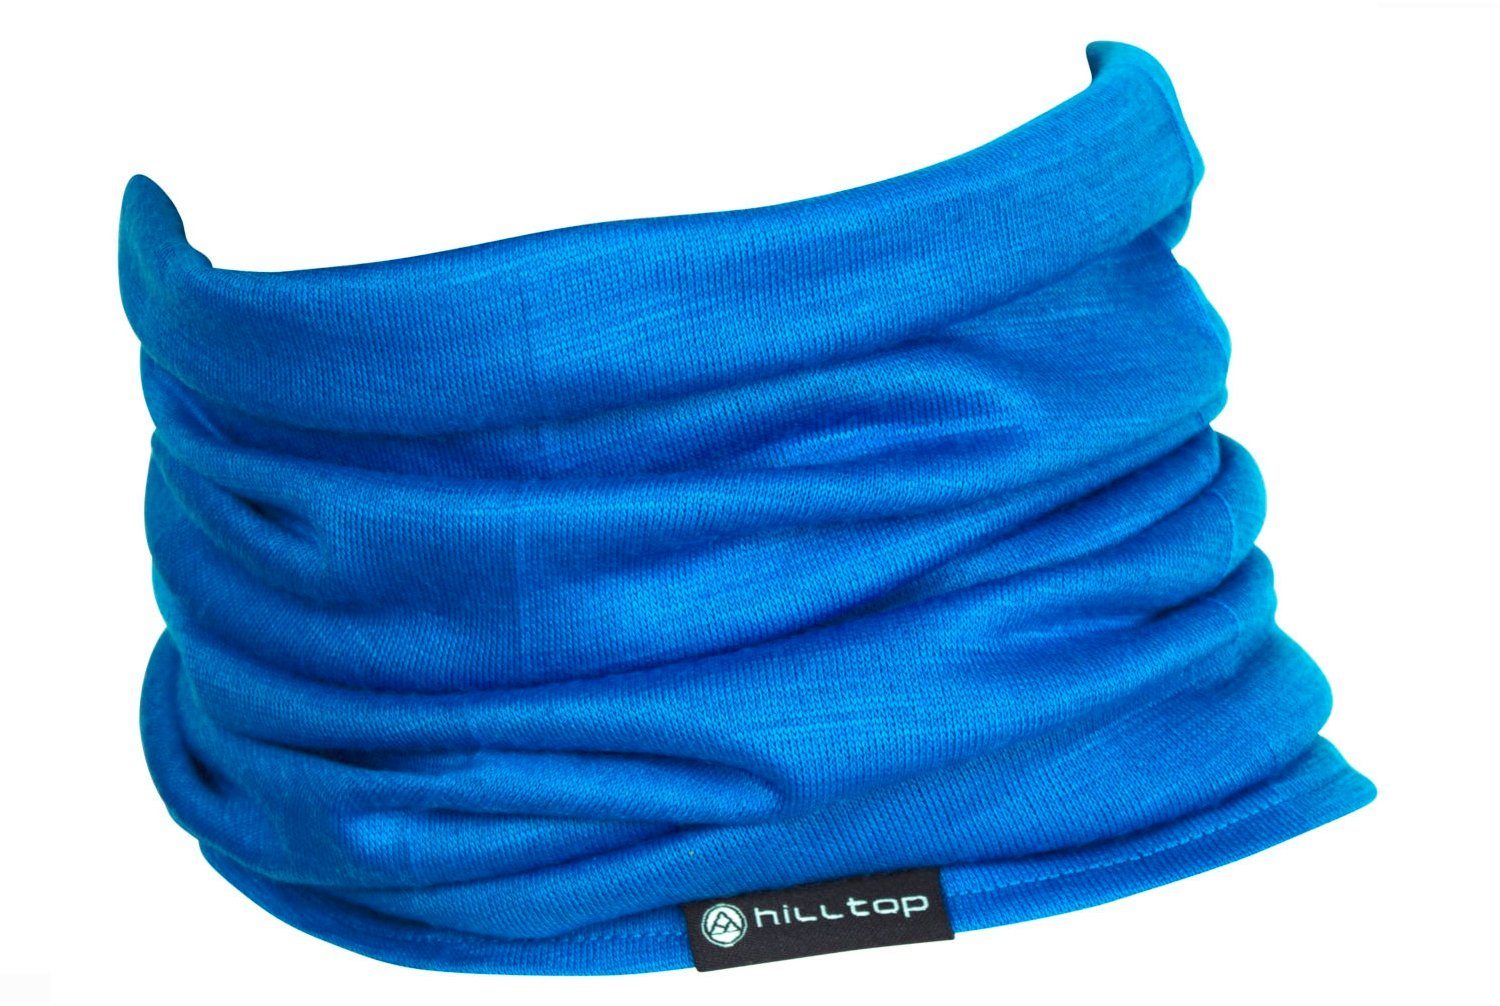 mulesingfrei), Bandana Blue Hilltop (Merinowolle, Multifunktionstuch Halstuch Schlauchtuch, 100% Wolle